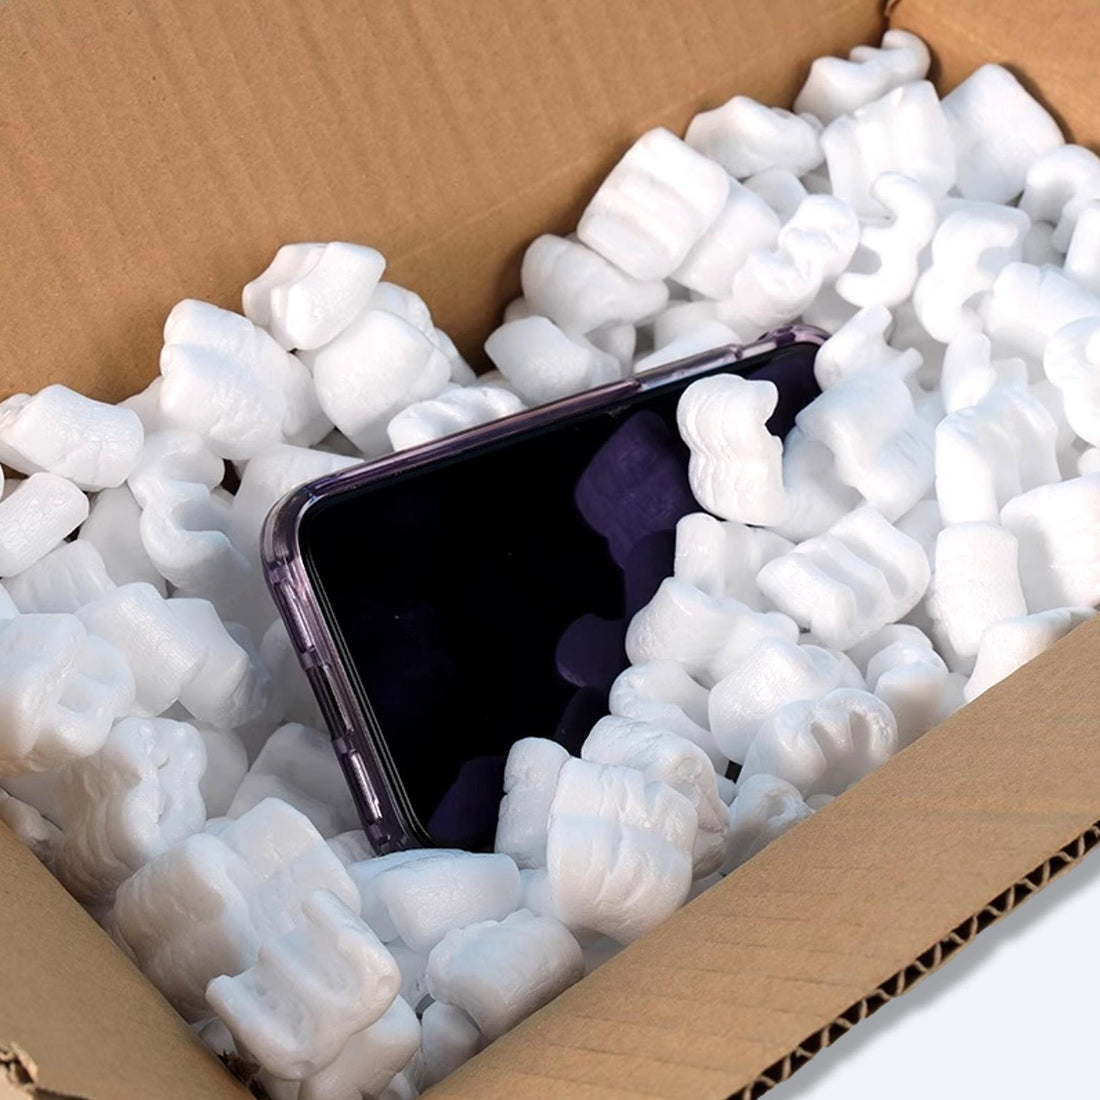 精細的發泡膠粒填充物環抱著一部手機，置於紙質運輸箱內，展現香港包裝供應商對電子產品保護的專注與承諾。